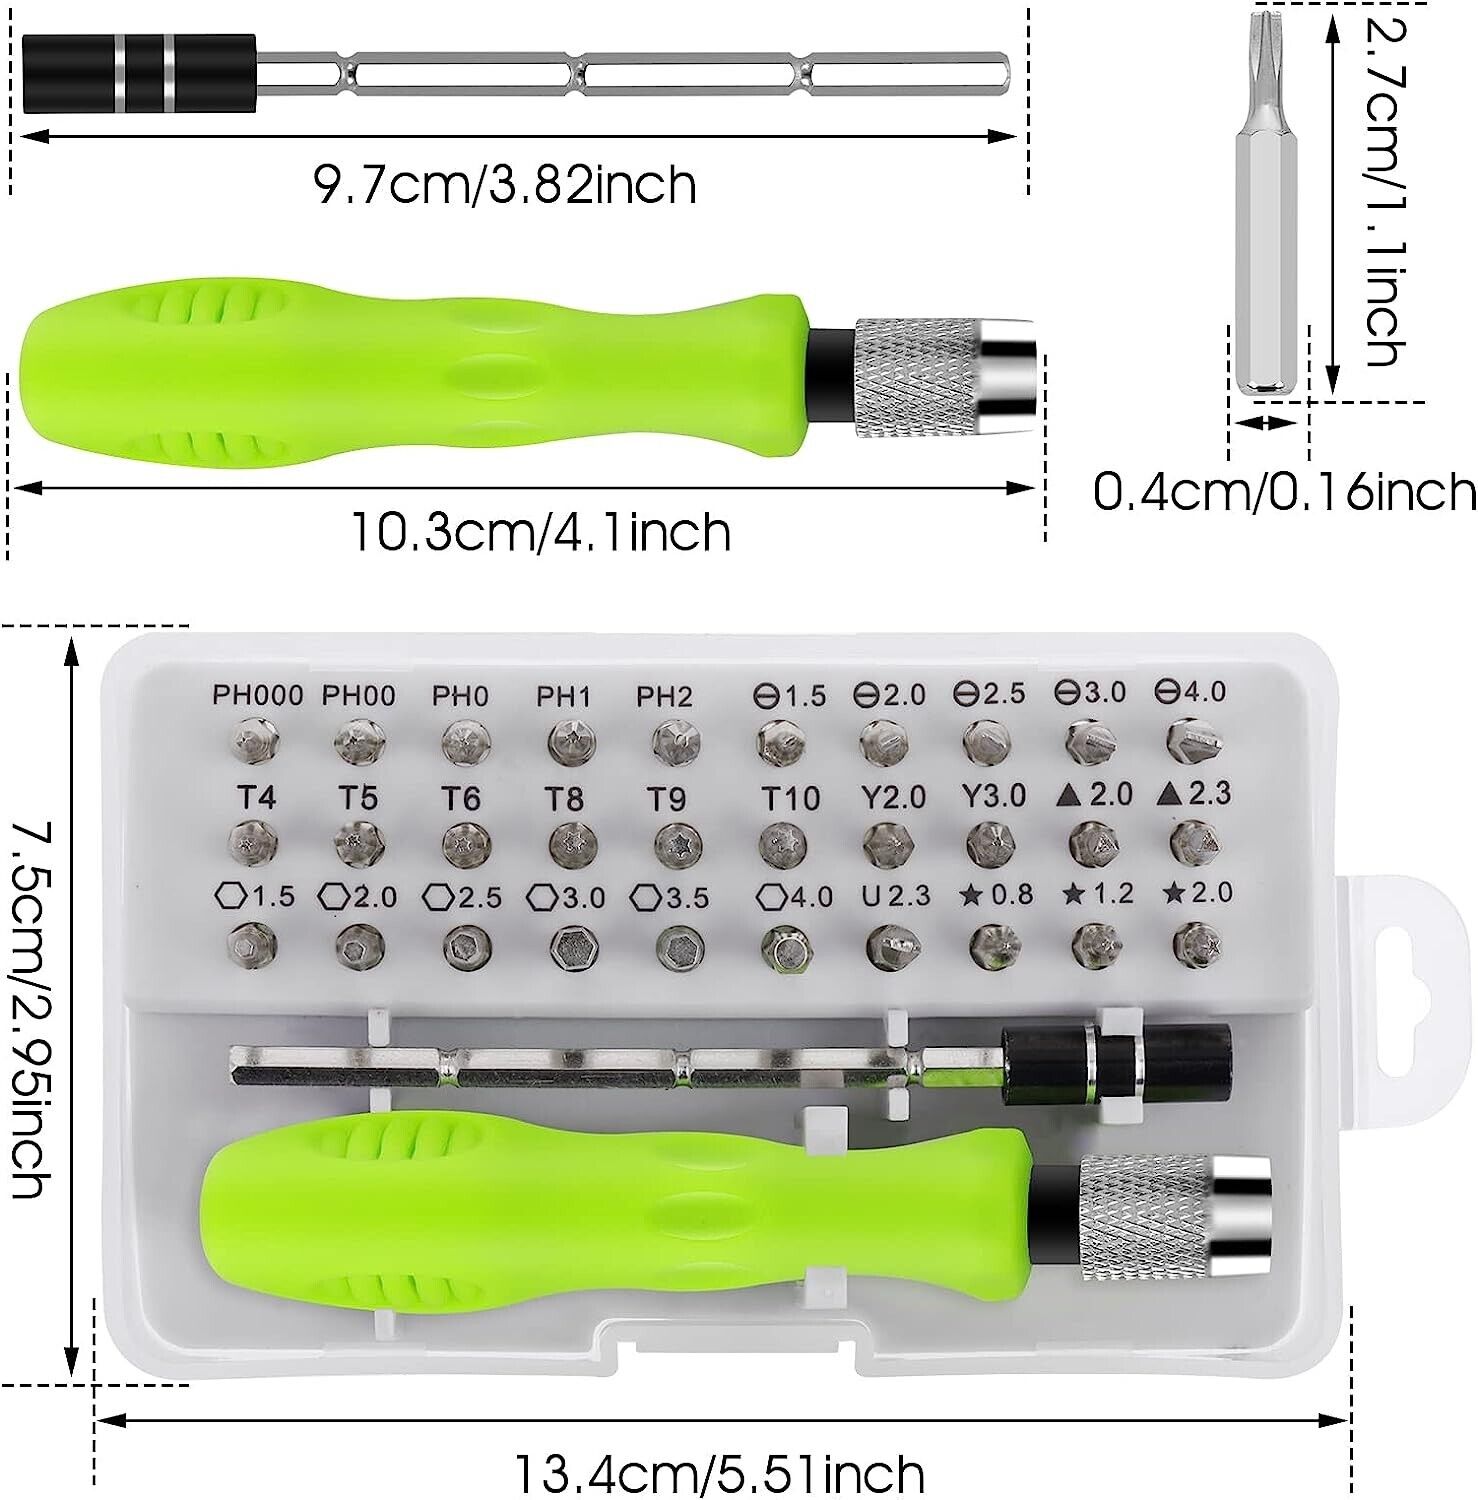 Reparatur Öffnungswerkzeug Kit 32 in 1 Schraubendreher Satz Für Uhren Laptop PC